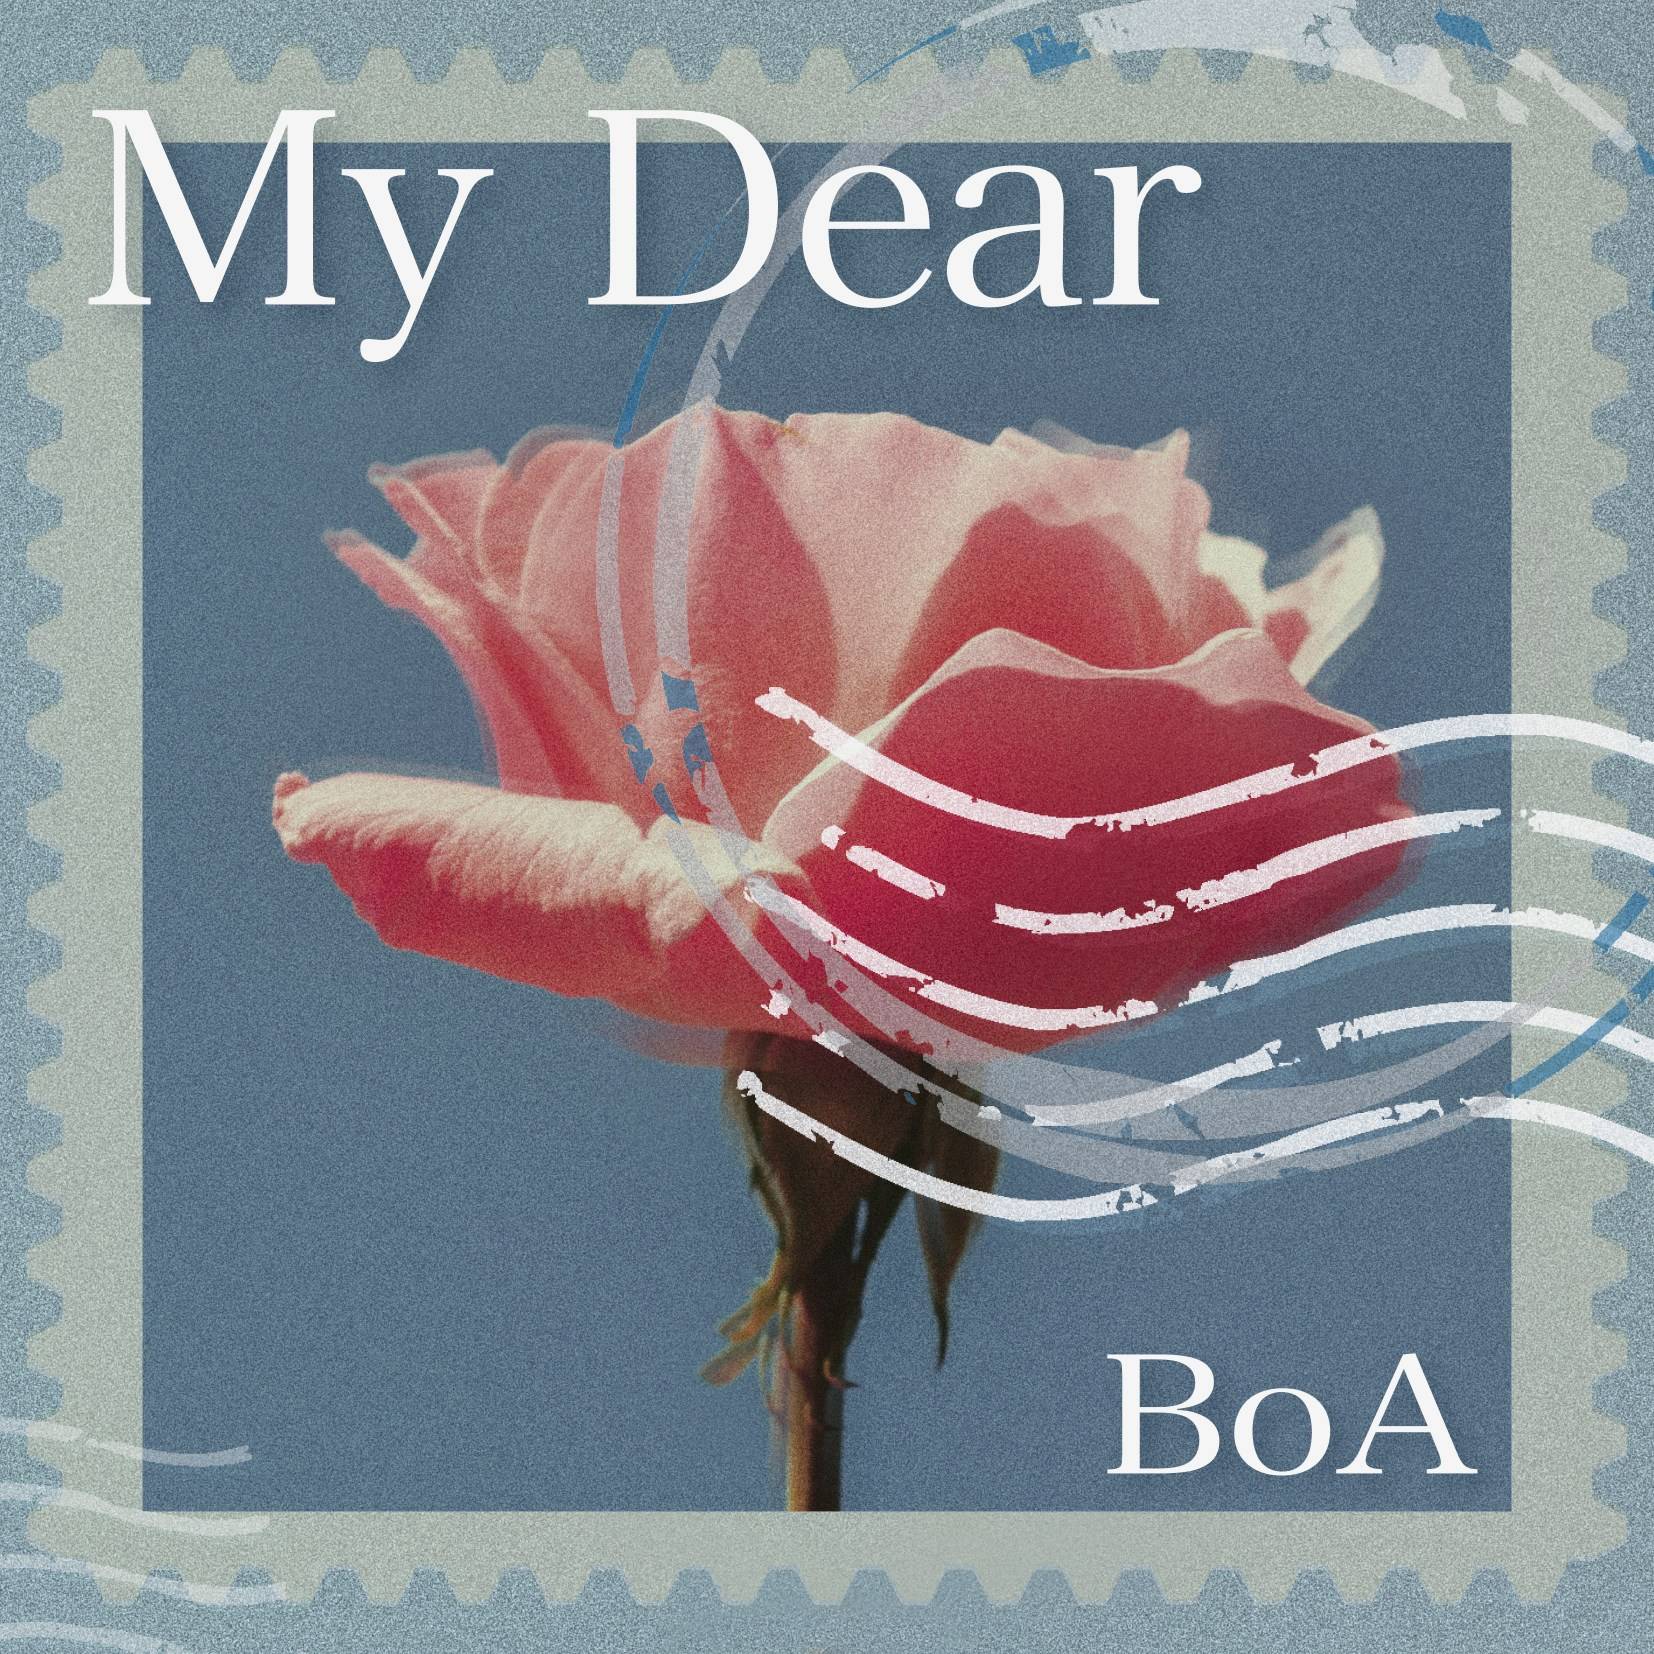 Boa日本出道周年 日文数码单曲 My Dear 将于11月4日23点公开 Oricon